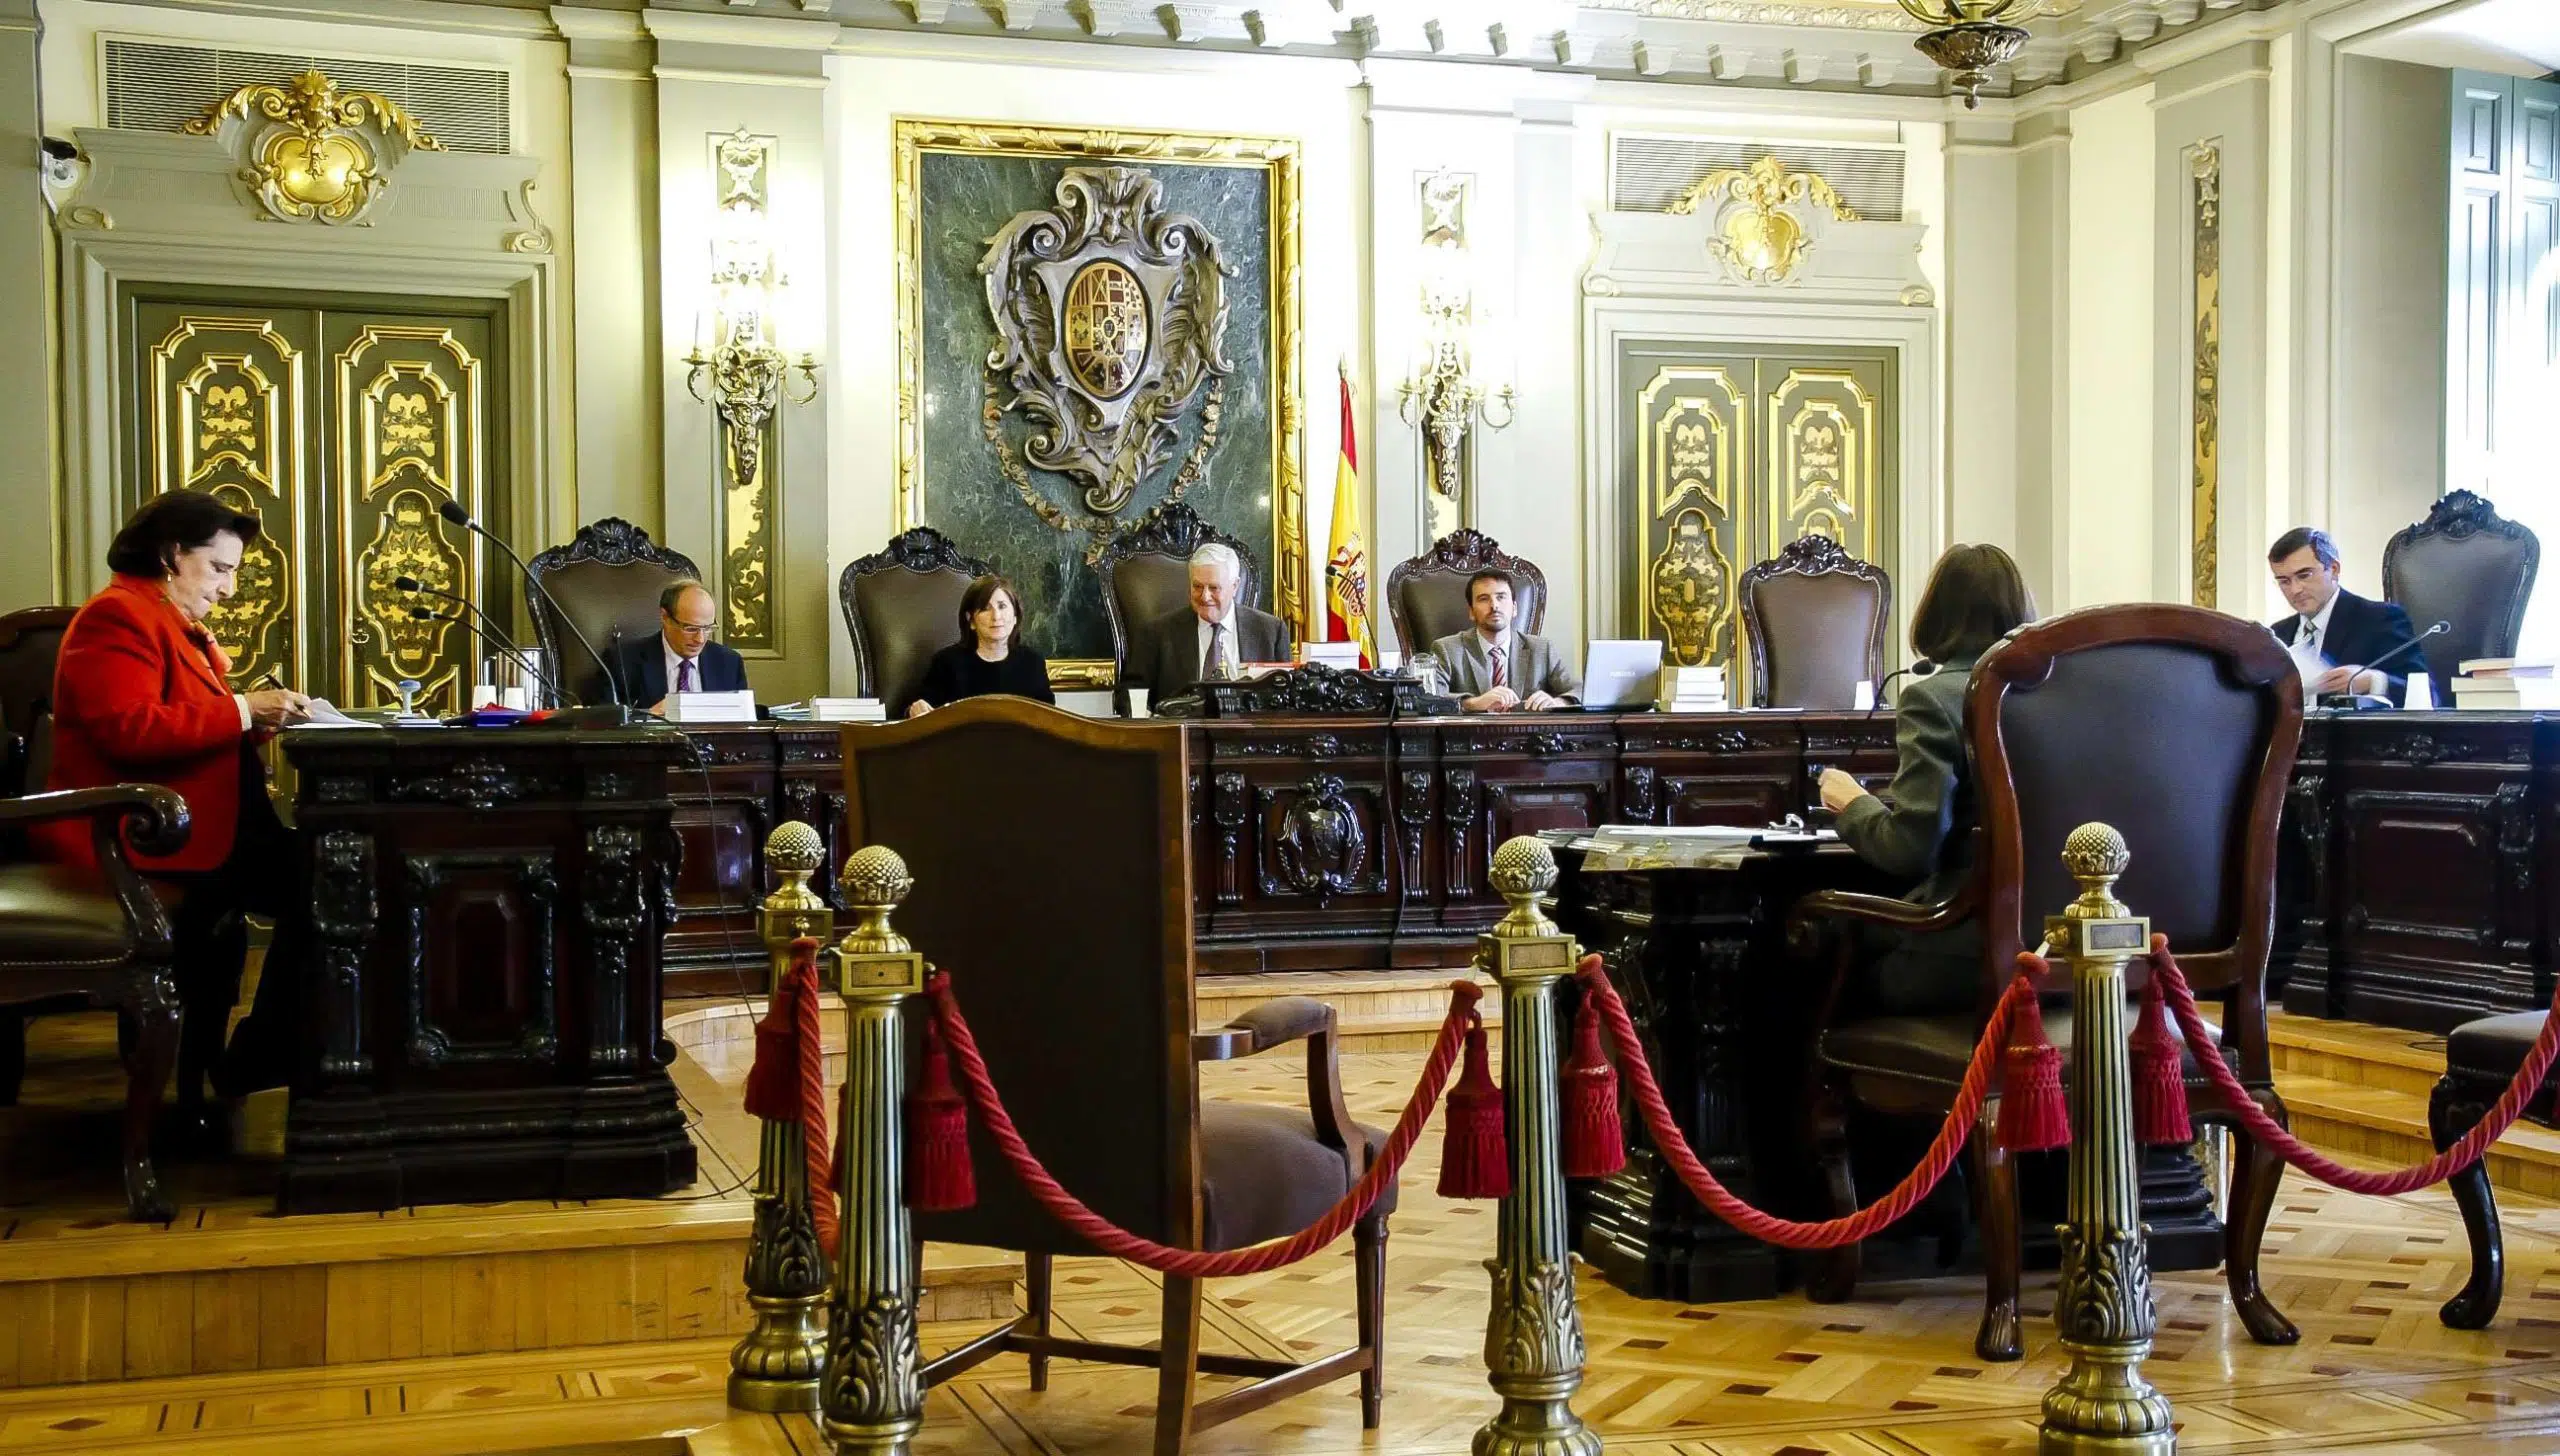 Suspendidos los exámenes de oposición a las carreras judicial y fiscal hasta después del estado de alarma